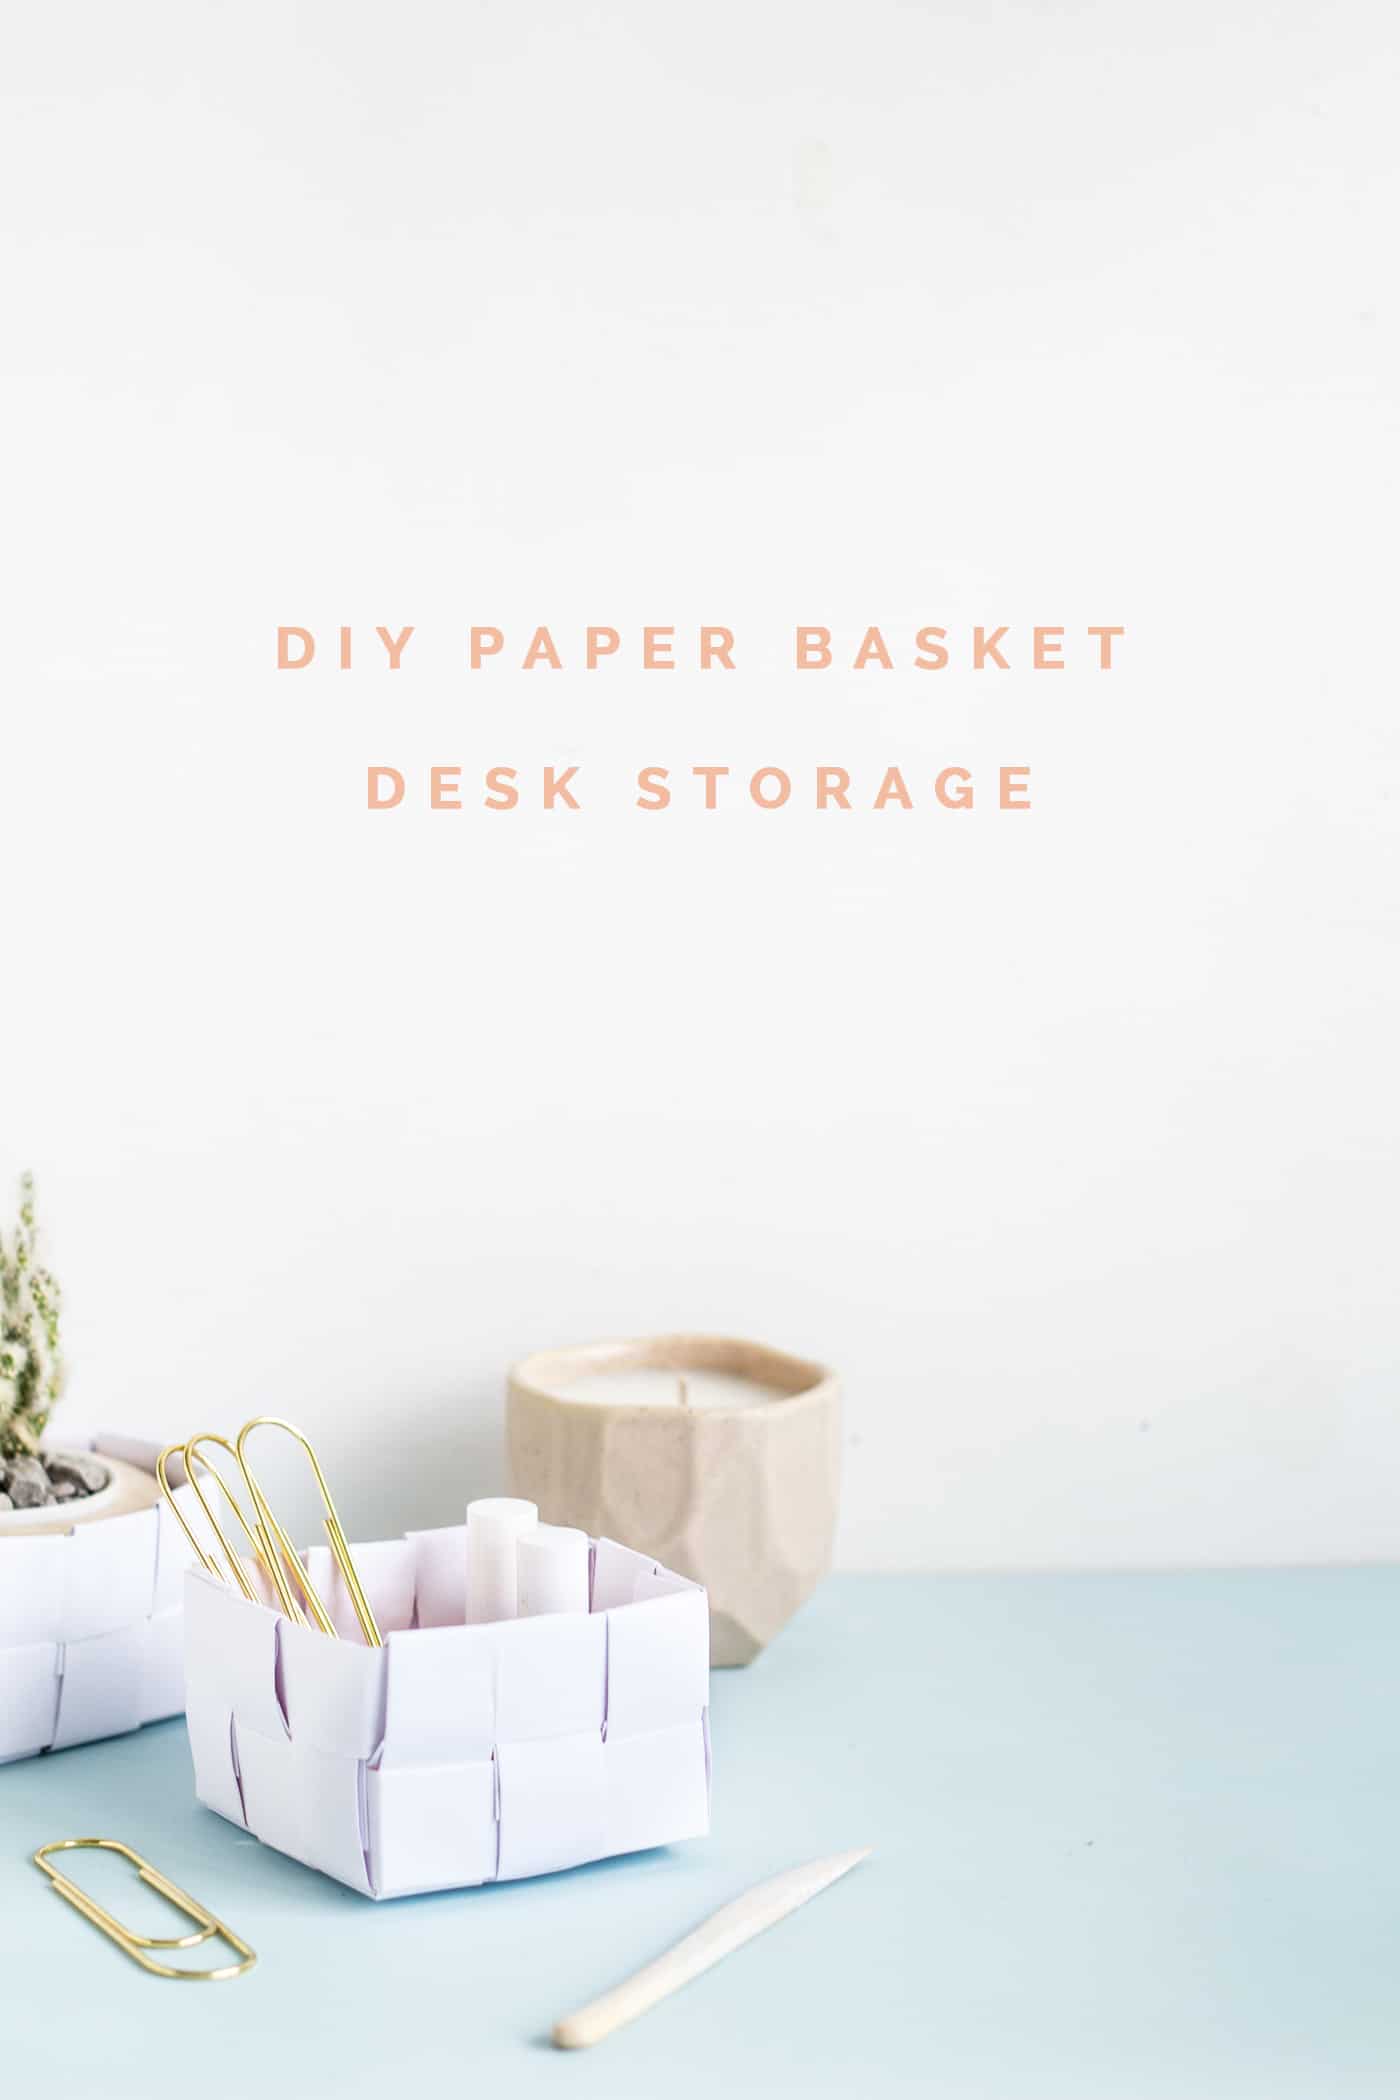 DIY paper basket desk storage